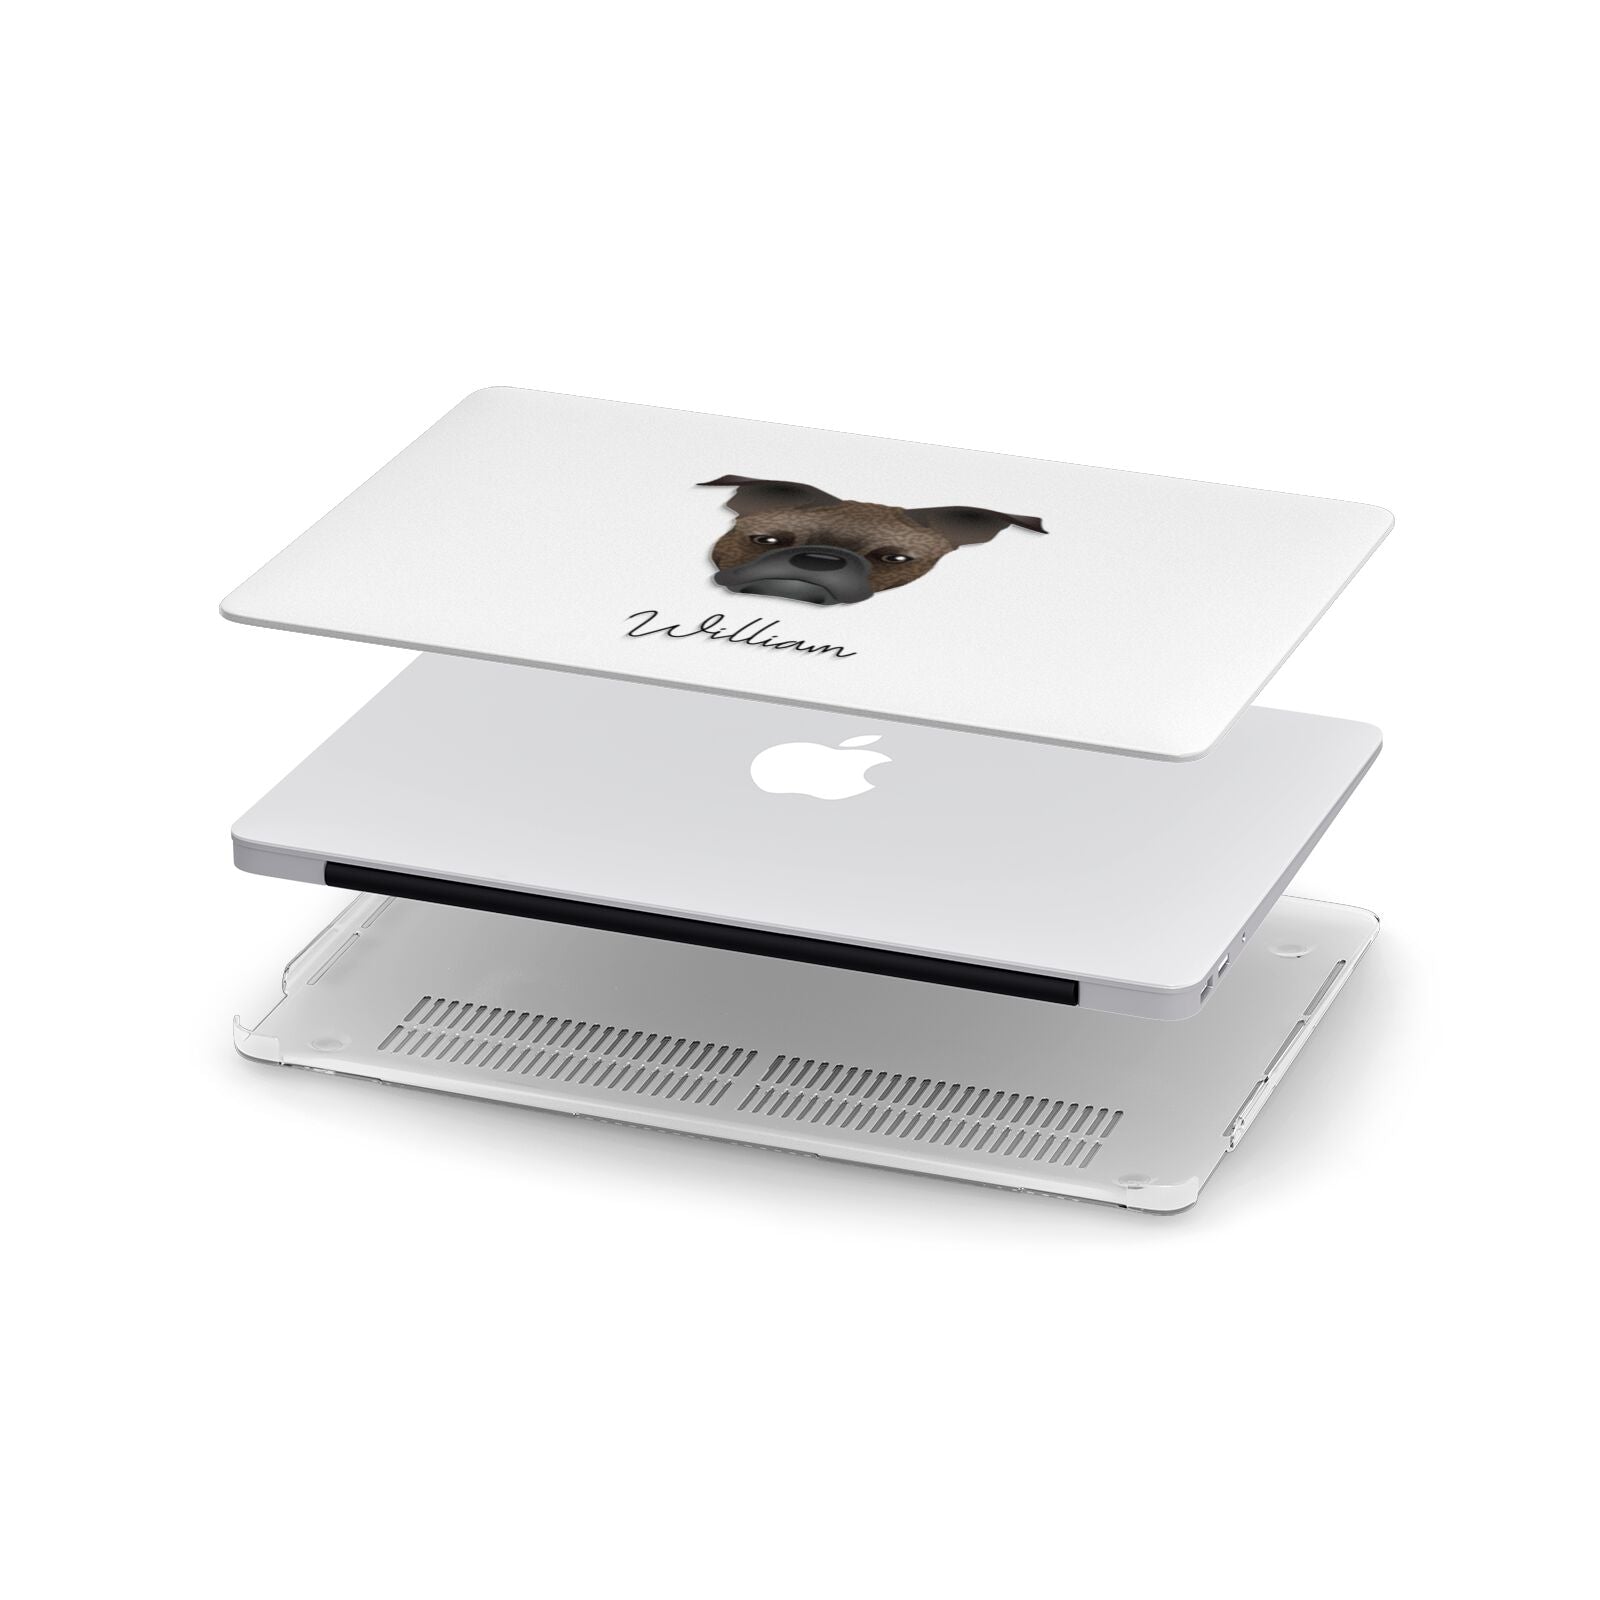 Frug Personalised Apple MacBook Case in Detail